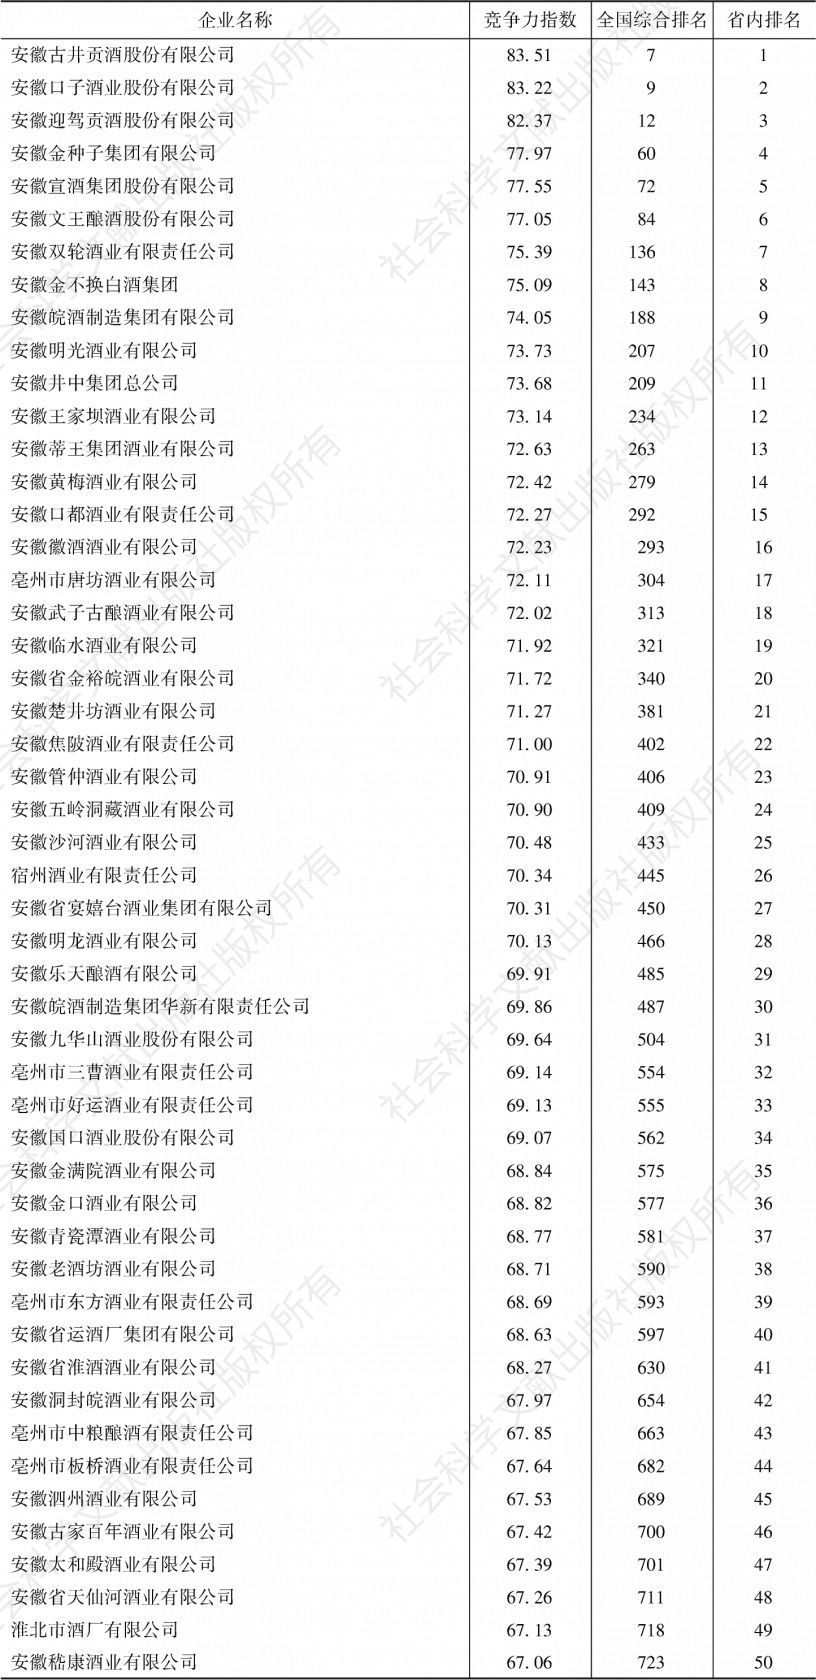 附表3 安徽省白酒企业竞争力指数排名前50名情况